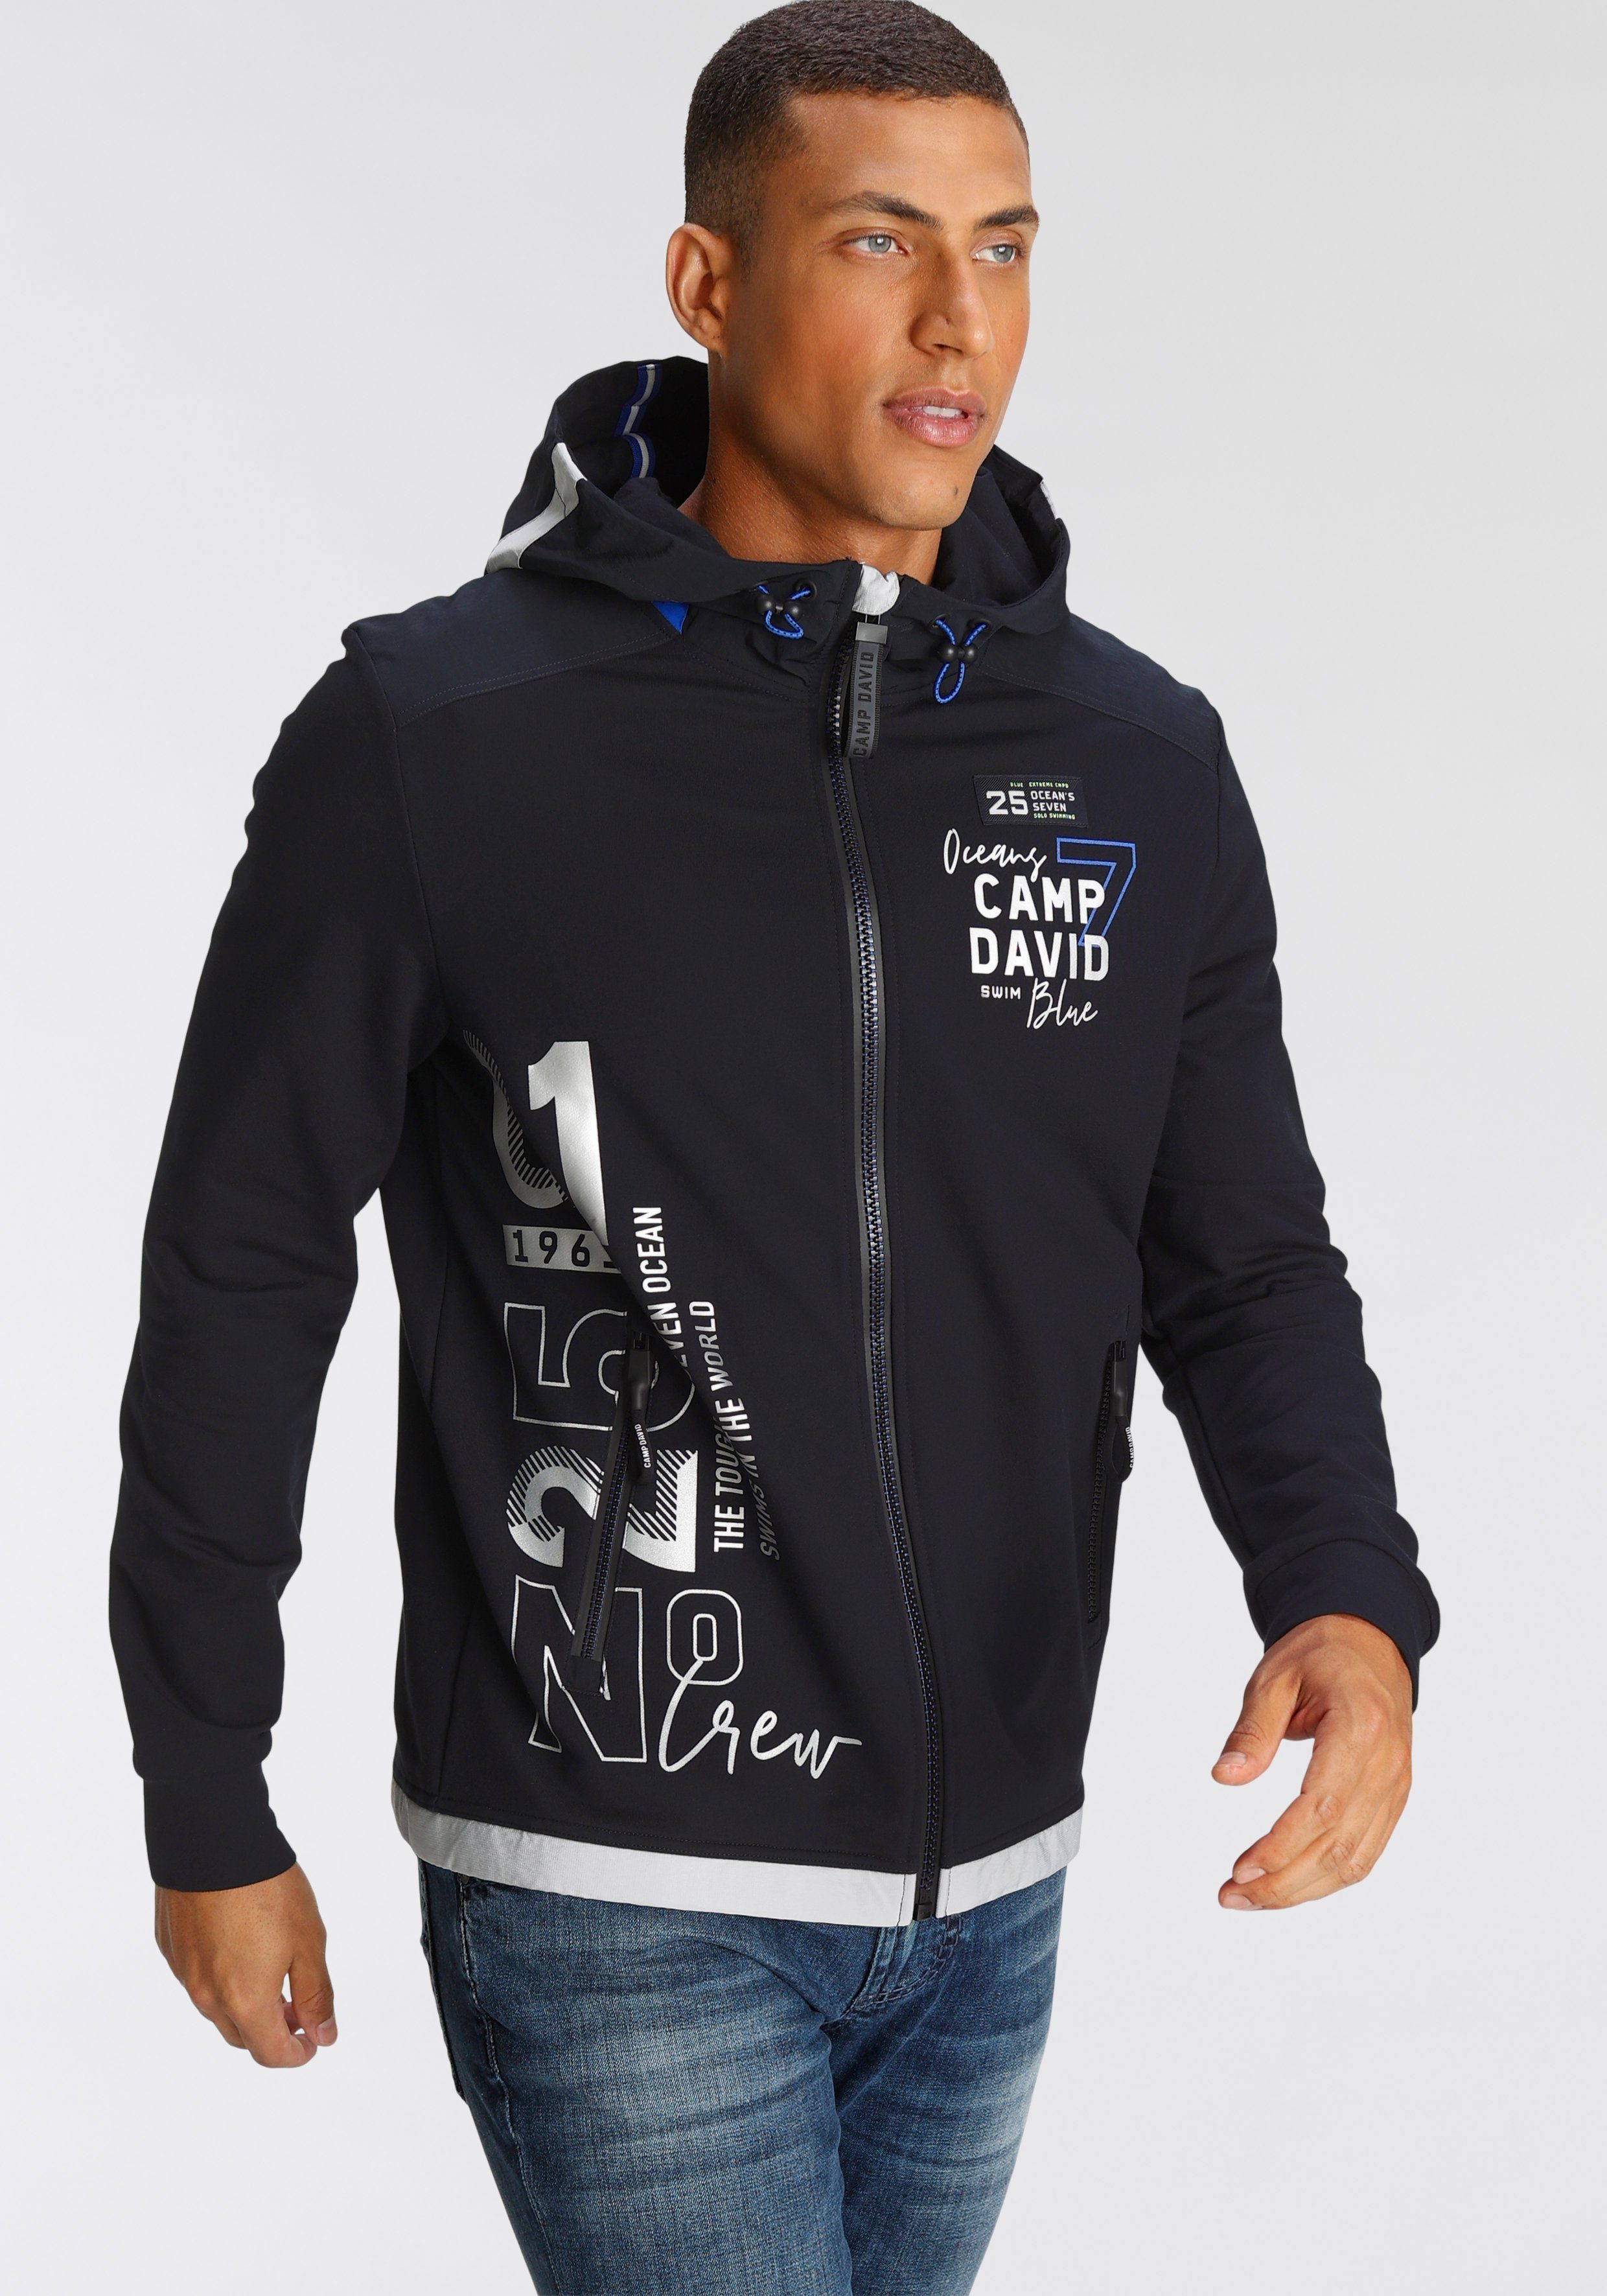 Camp David Jacken online kaufen | OTTO